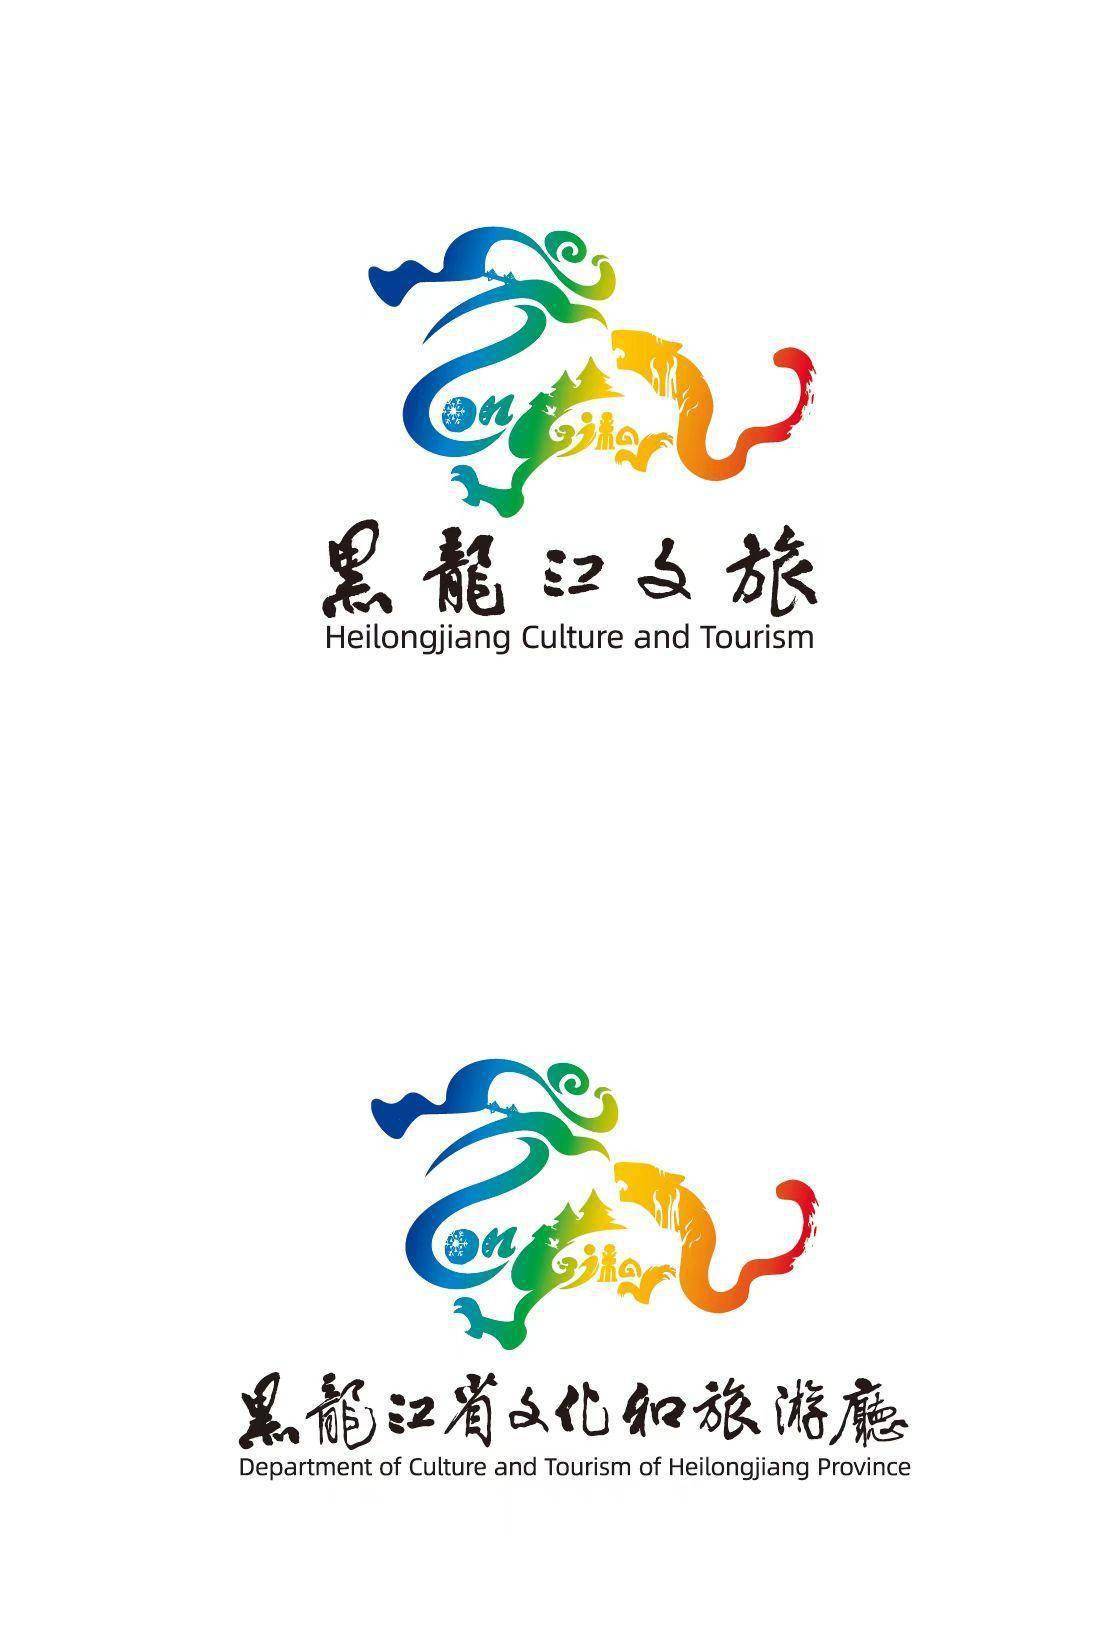 黑龙江省文化旅游形象logo什么样?宣传推广平台的名字叫什么?